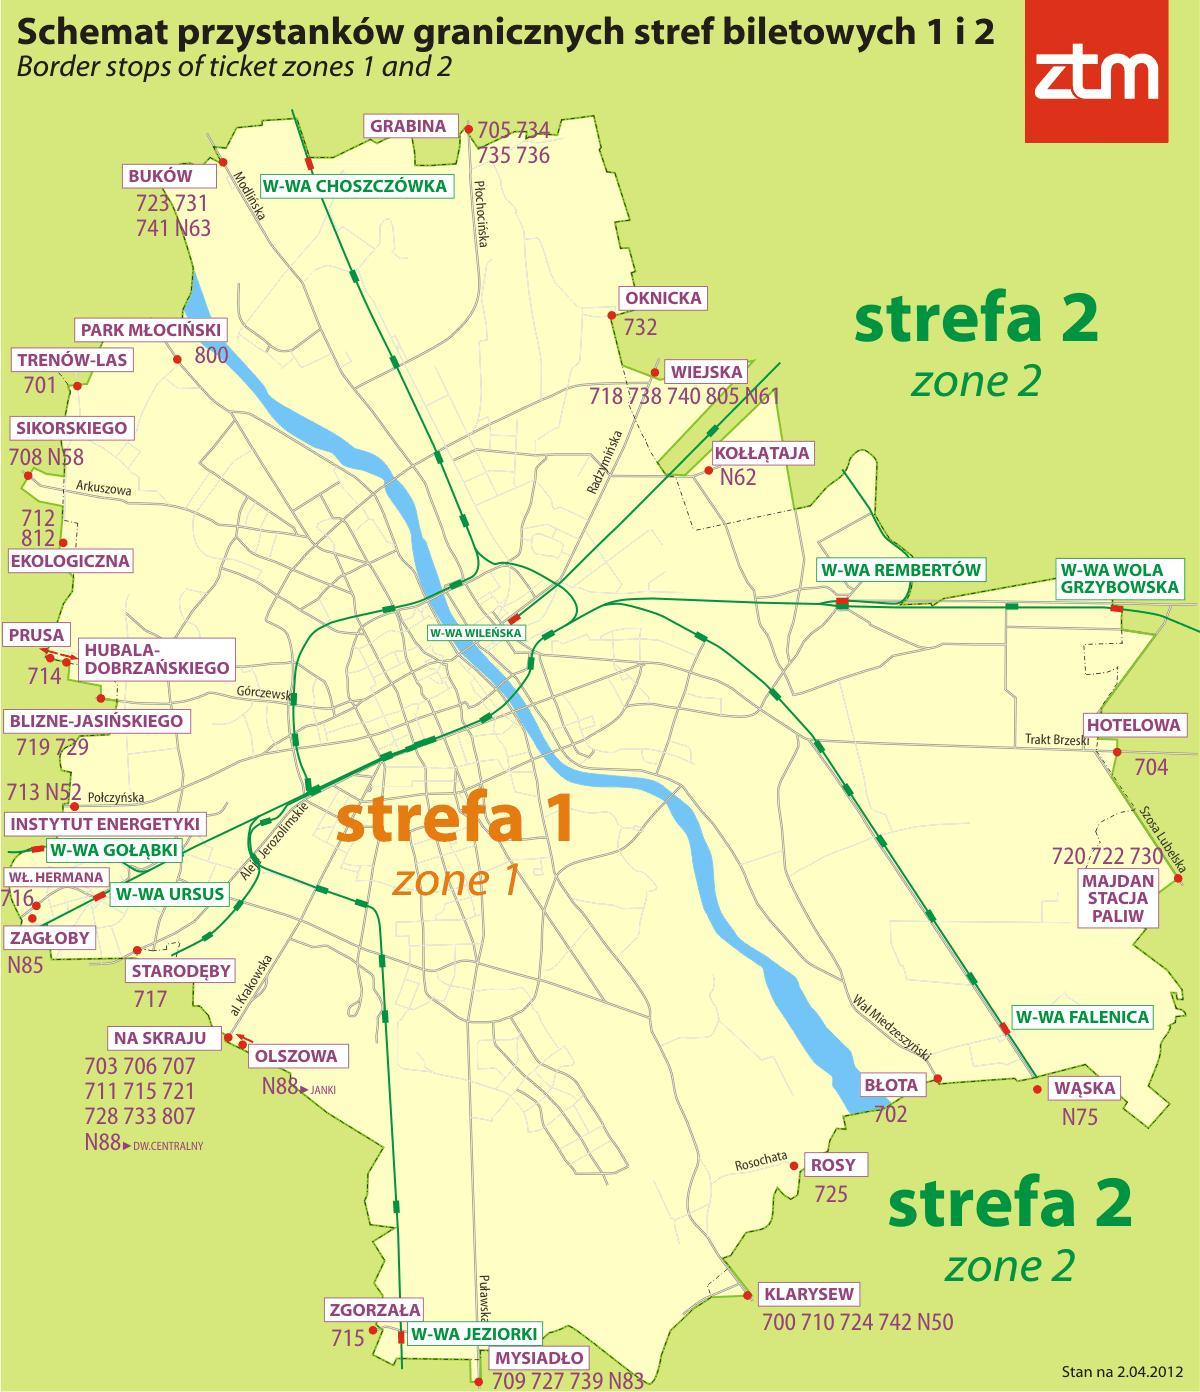 Warsaw zone 1 mapa